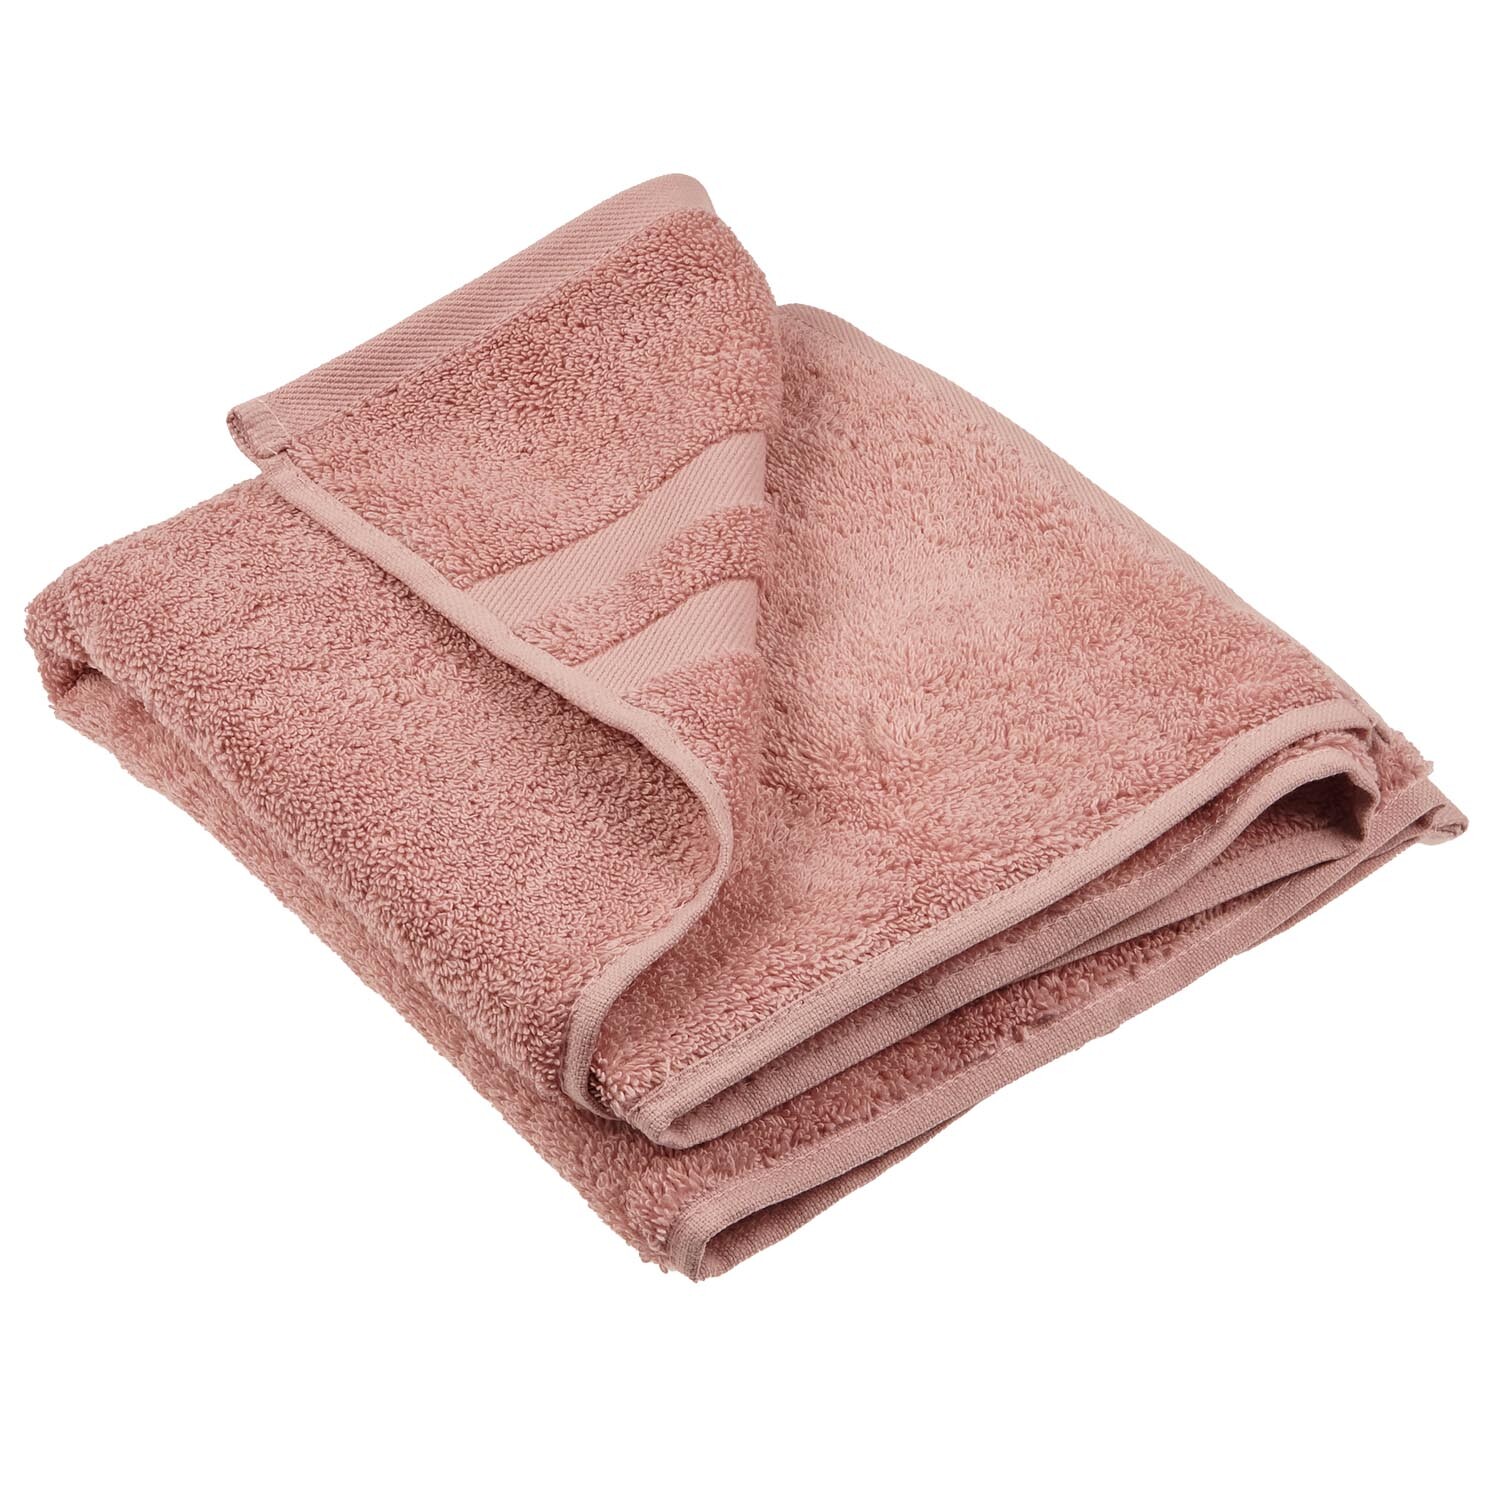 Divante Hand Towel  - Dusky Pink Image